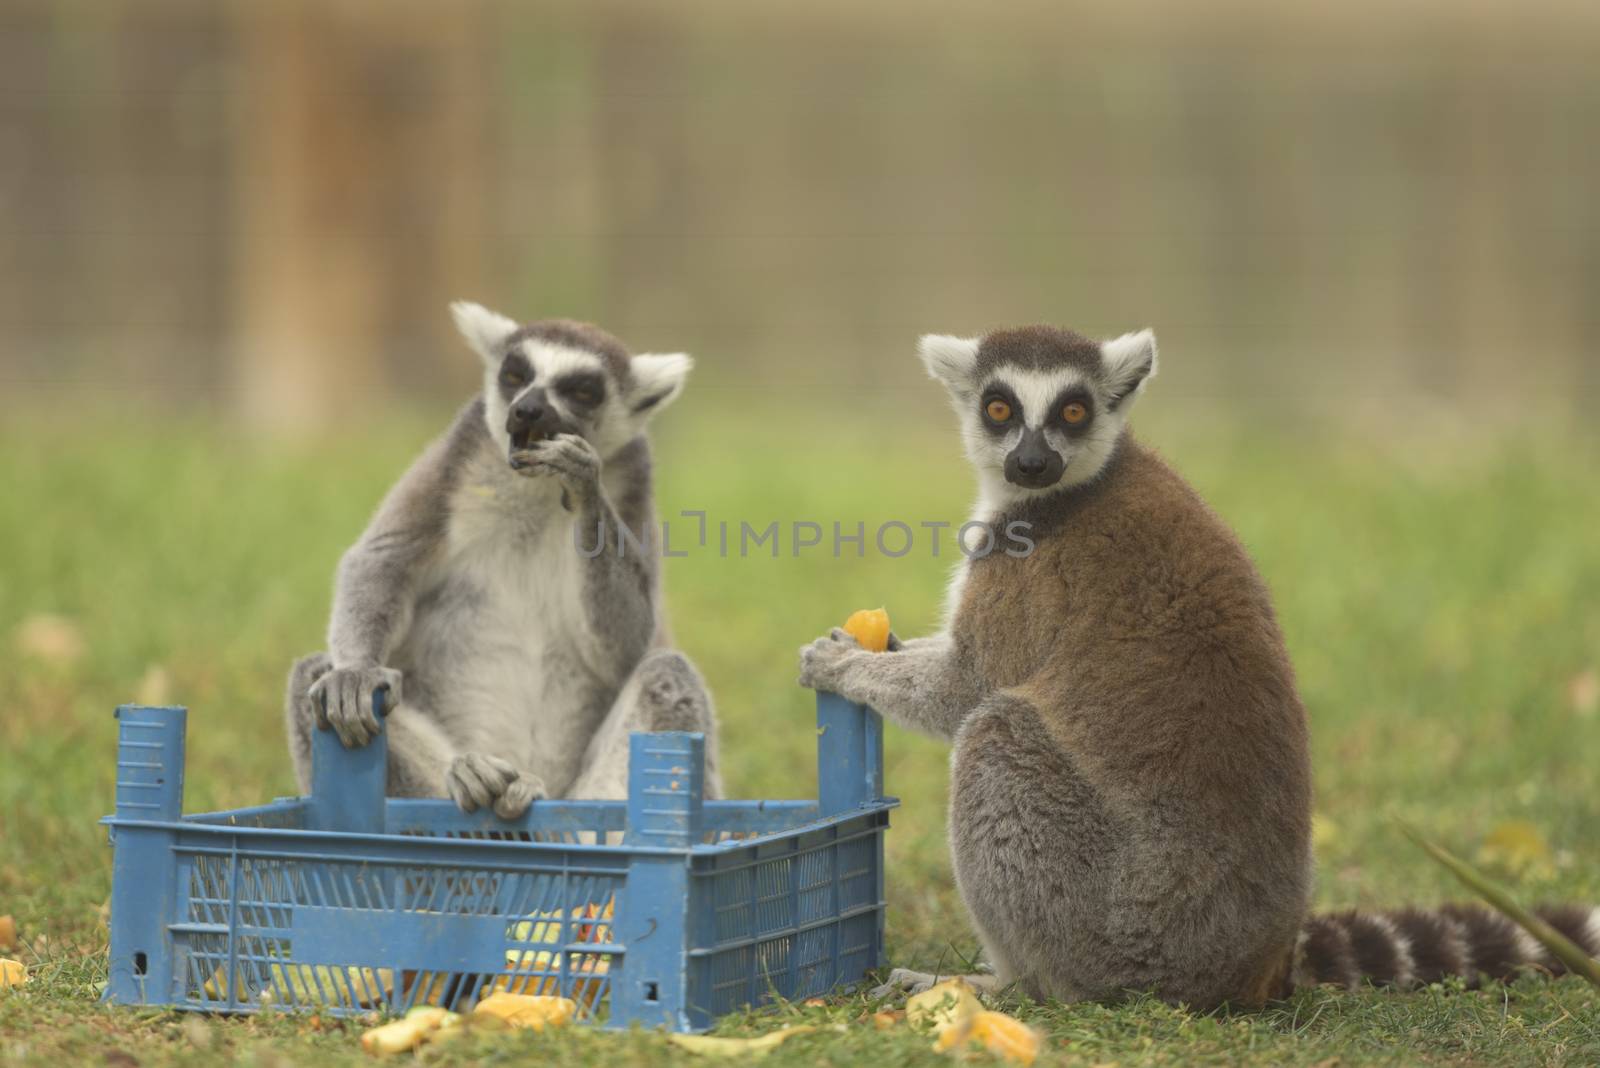 Funny Lemurs by ozkanzozmen